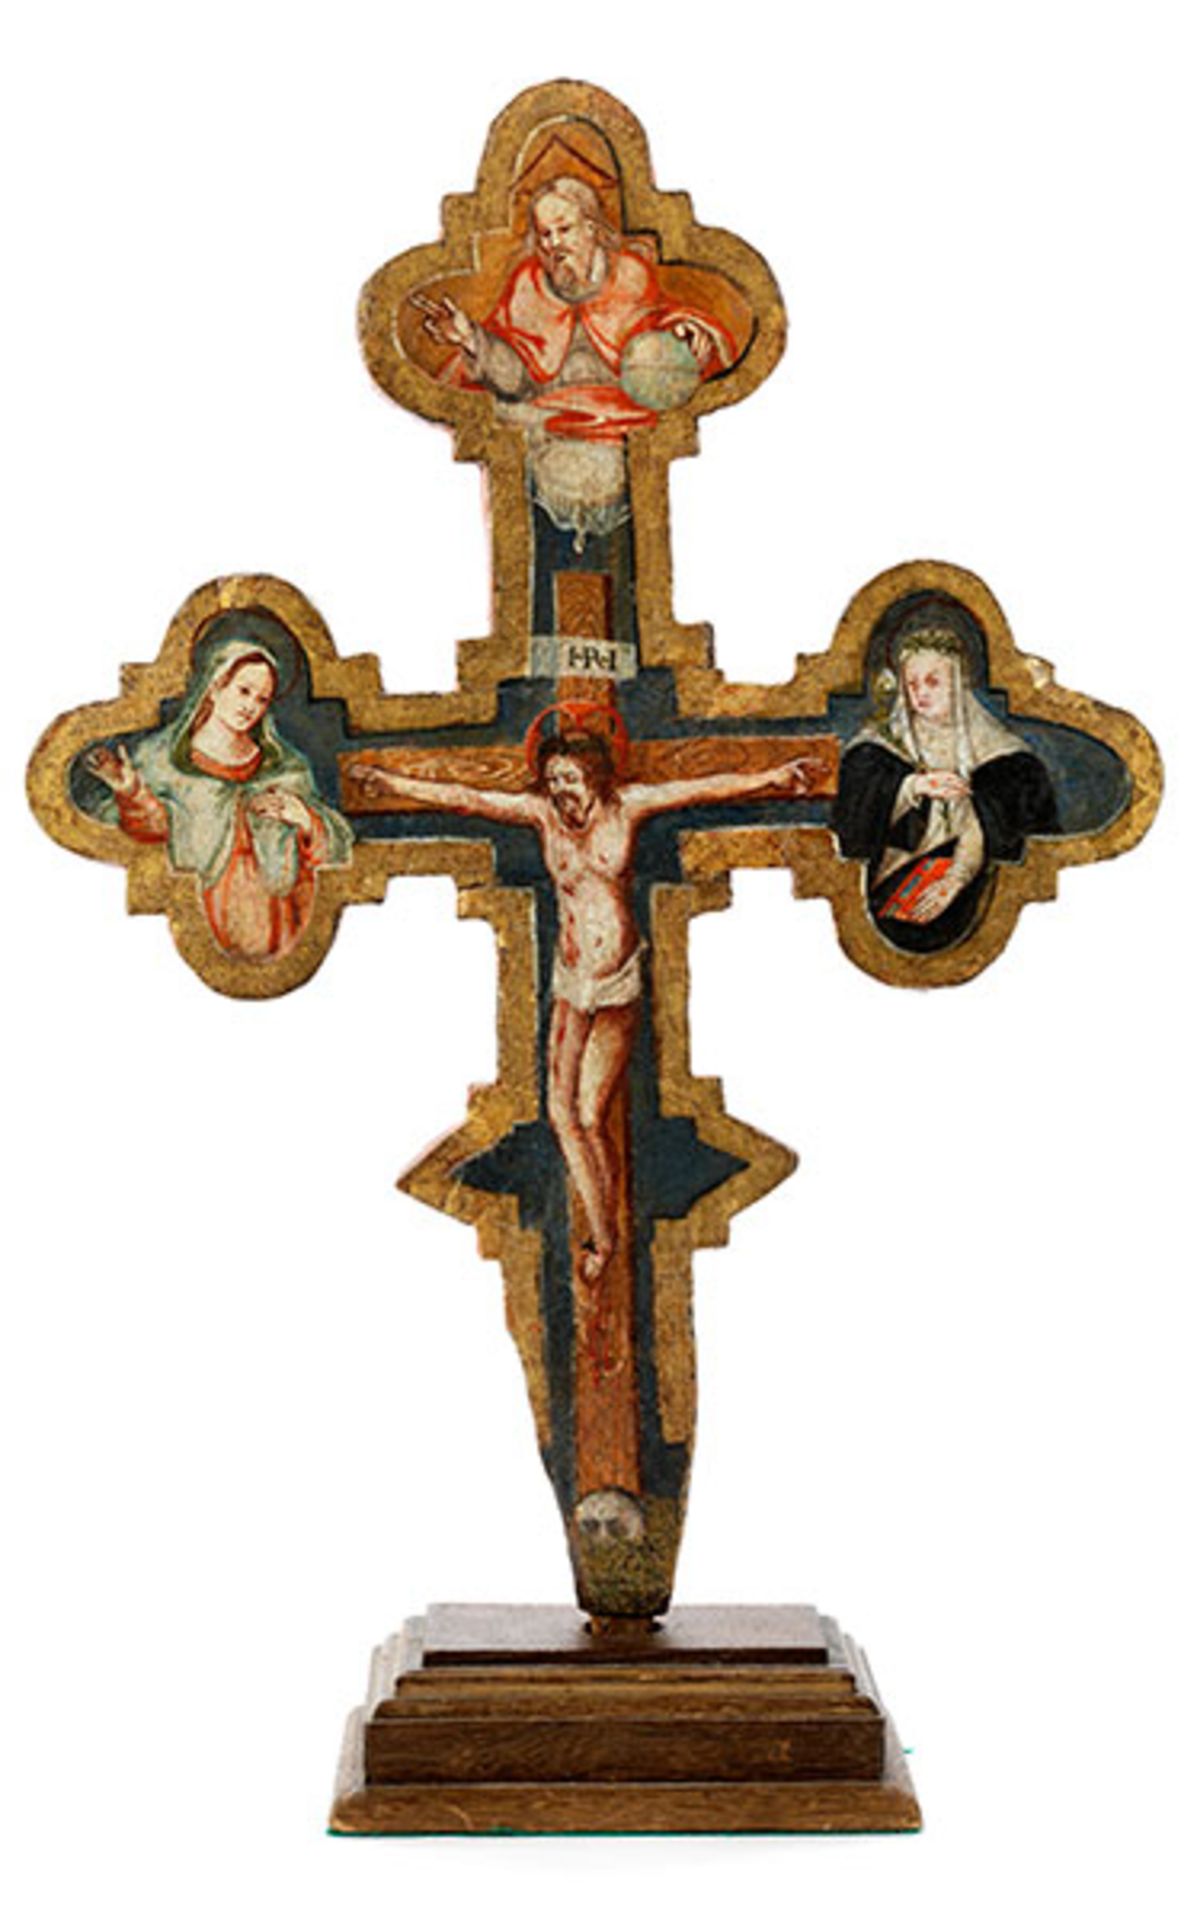 Sieneser Vortragekreuz des ausgehenden 15. Jahrhunderts Höhe: 48 cm. Breite: 32 cm. Holz, bemalt.